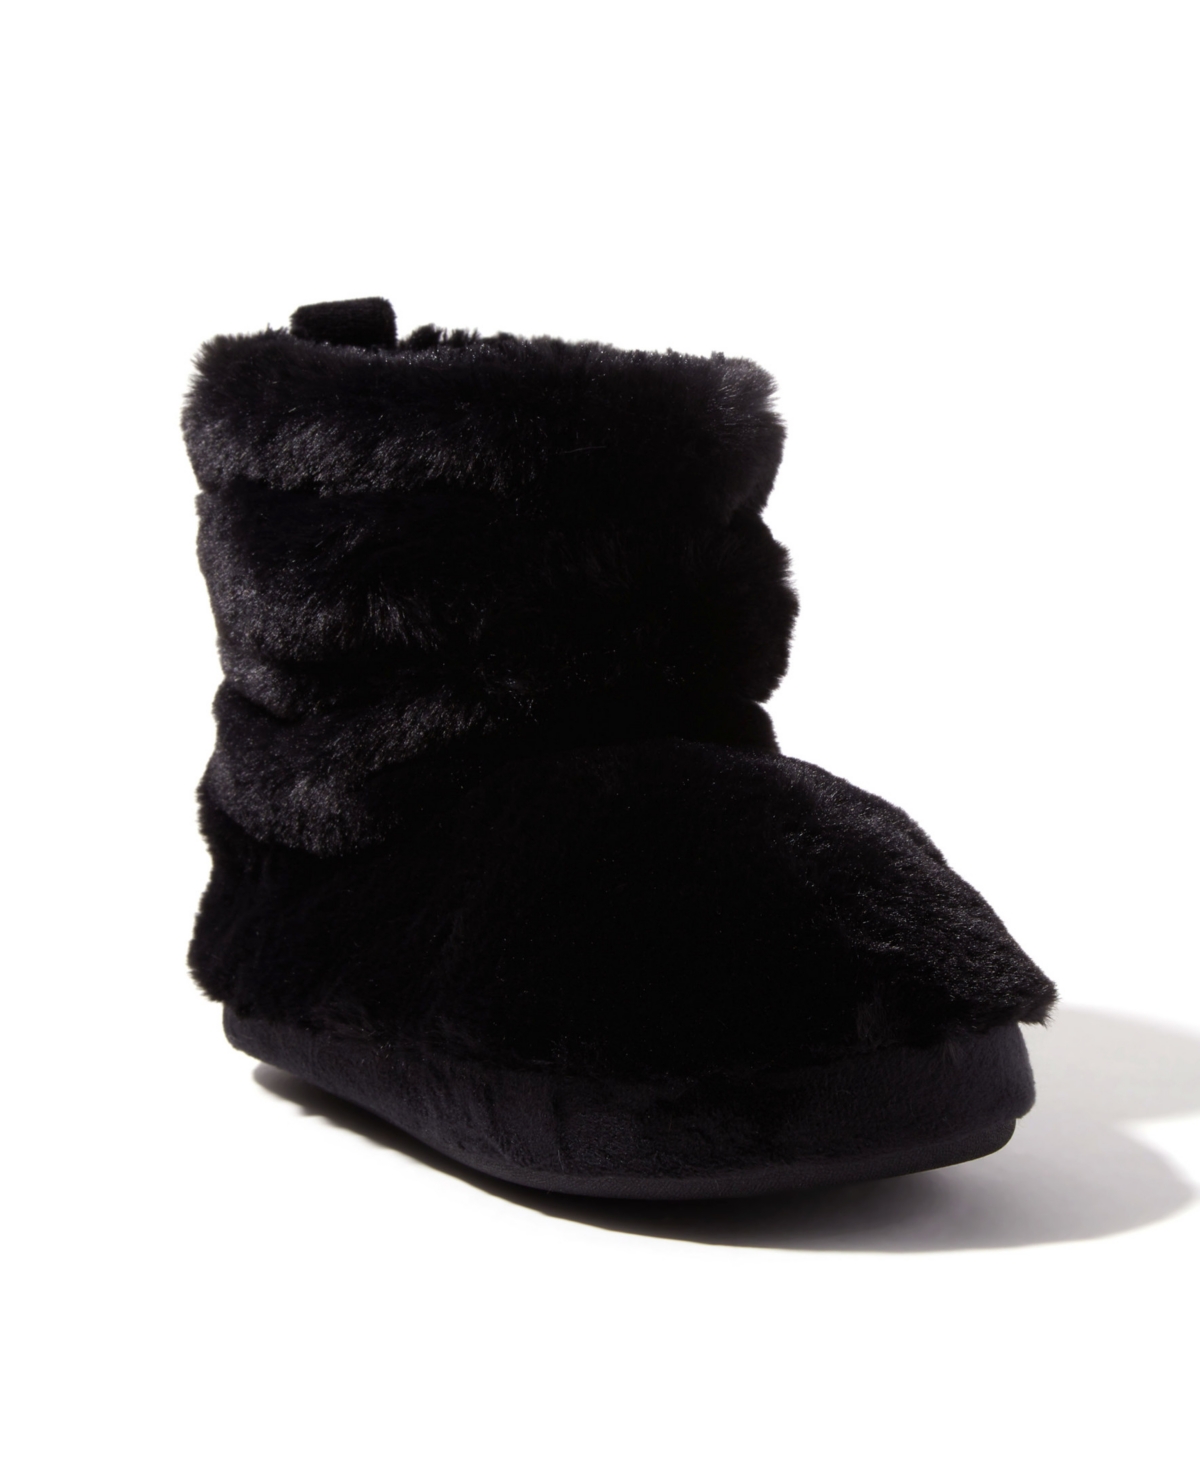 Dearfoams Women's Kimber Furry Bootie Slippers In Black